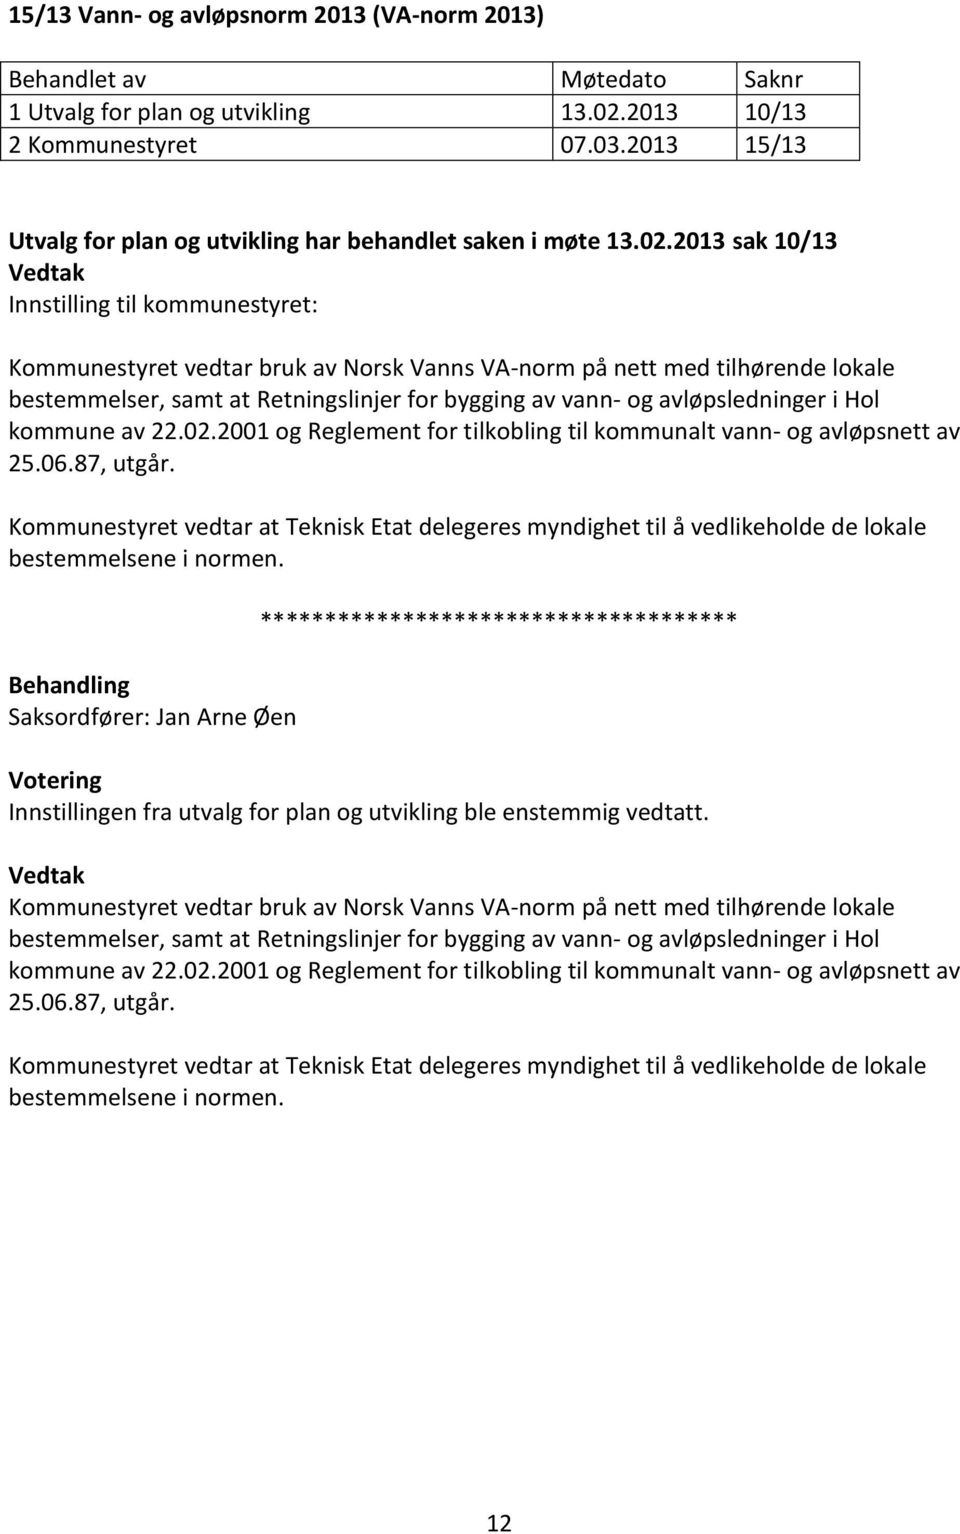 2013 sak 10/13 Innstilling til kommunestyret: Kommunestyret vedtar bruk av Norsk Vanns VA-norm på nett med tilhørende lokale bestemmelser, samt at Retningslinjer for bygging av vann- og